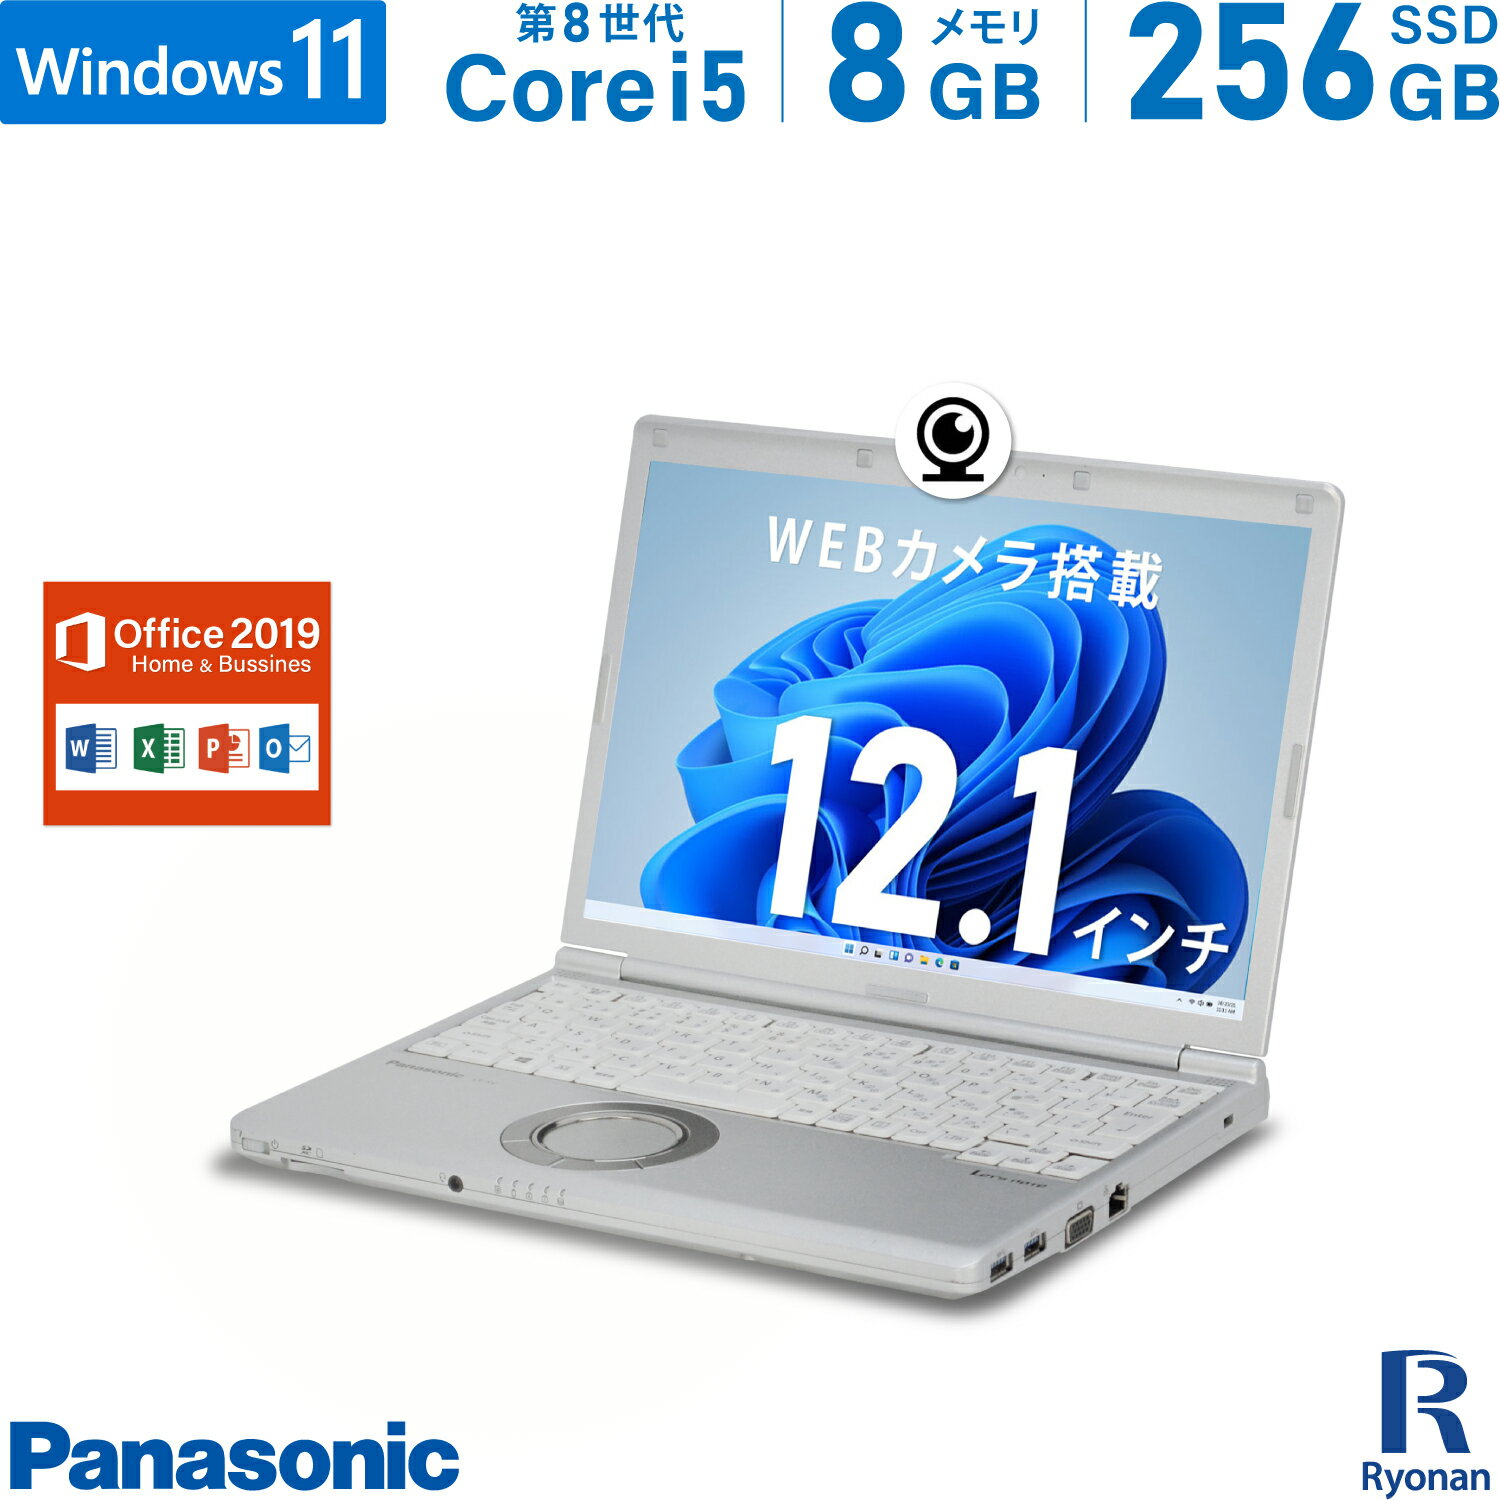 Panasonic レッツノート CF-SV7 第8世代 Core i5 メモリ:8GB 新品 M.2 SSD:256GB ノートパソコン Microsoft Office 2019搭載 12.1インチ HDMI 無線LAN 中古 パソコン 中古ノートパソコン Windows 11 搭載 Windows 10 Office2019 WEBカメラ